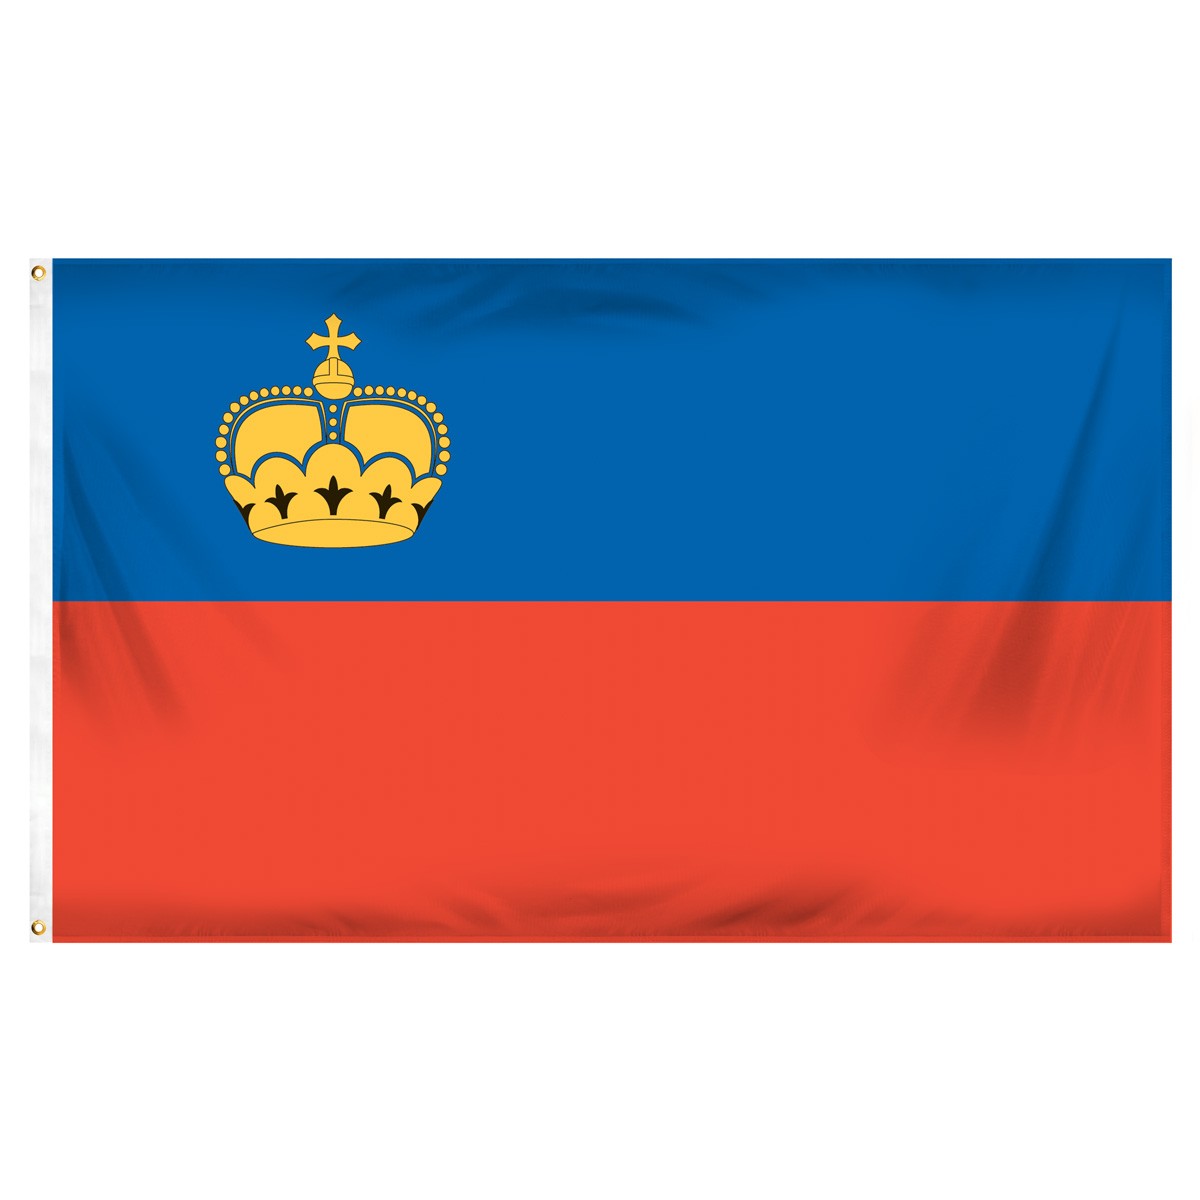 Liechtenstein Submit Flags and Flags